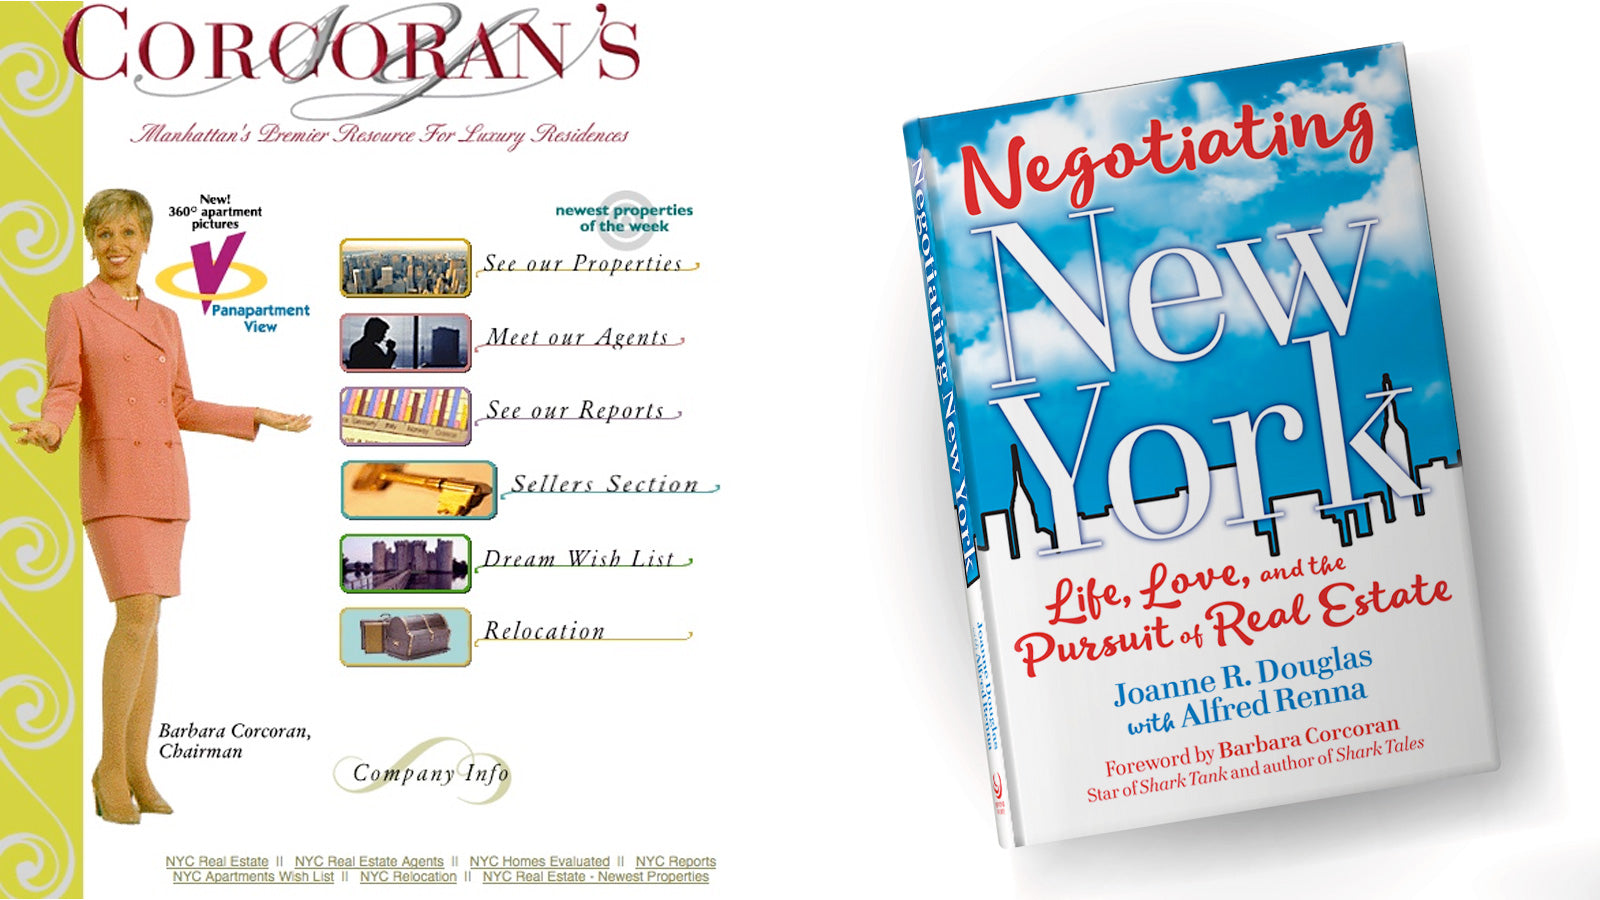 "Negotiating New York" Book Excerpt